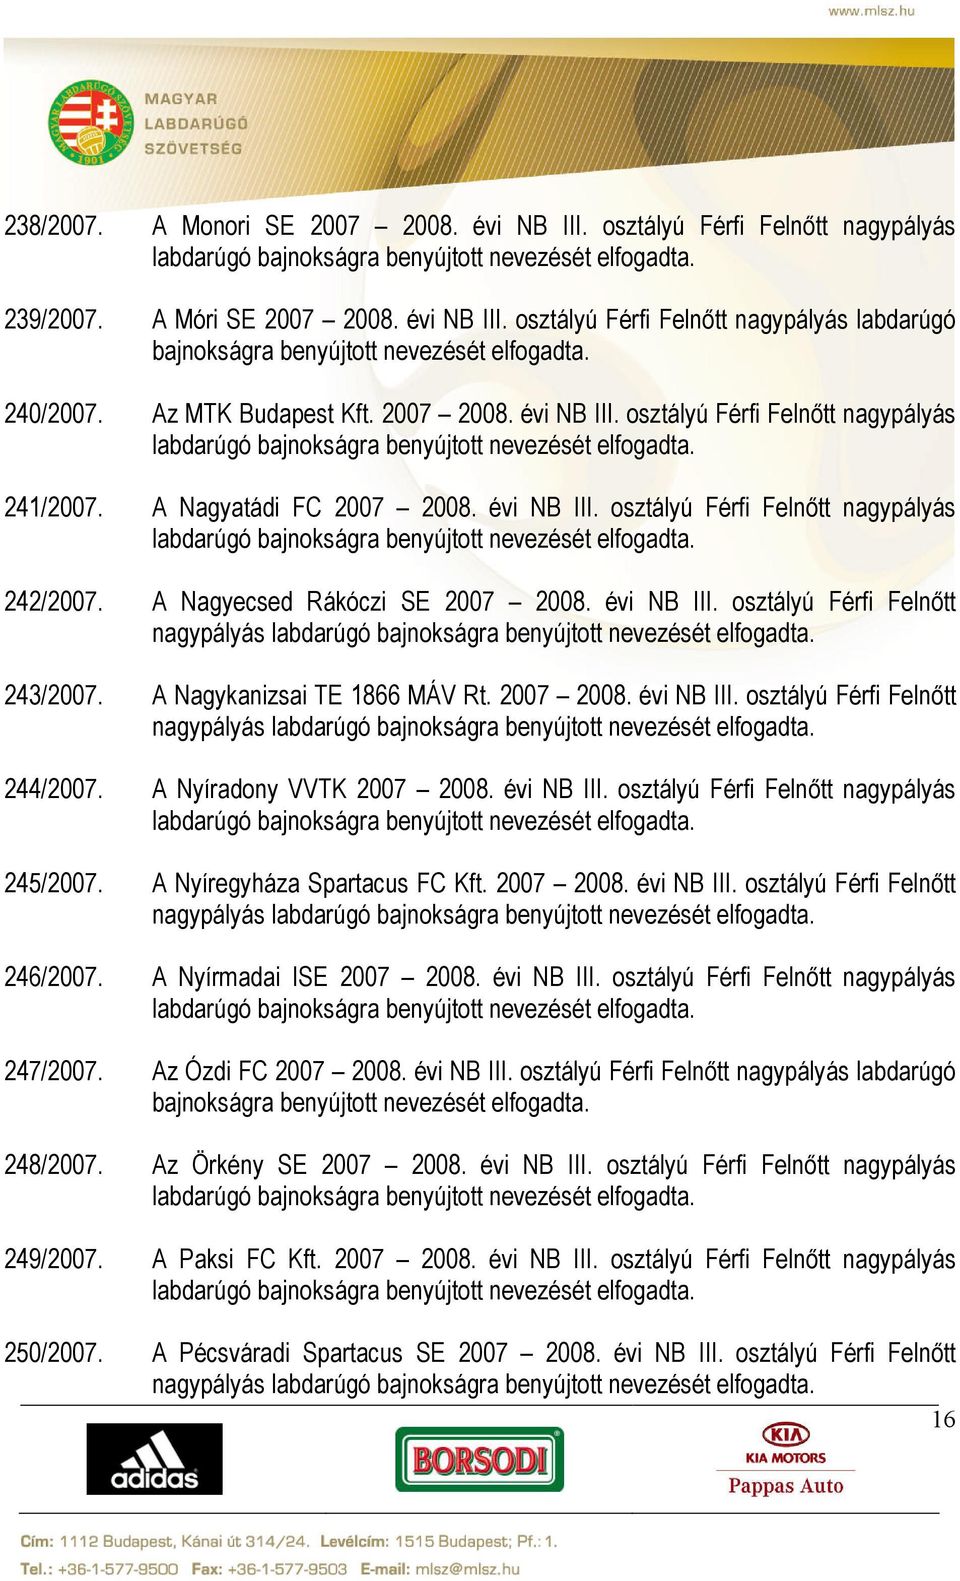 A Nagyecsed Rákóczi SE 2007 2008. évi NB III. osztályú Férfi Felnőtt nagypályás 243/2007. A Nagykanizsai TE 1866 MÁV Rt. 2007 2008. évi NB III. osztályú Férfi Felnőtt nagypályás 244/2007.